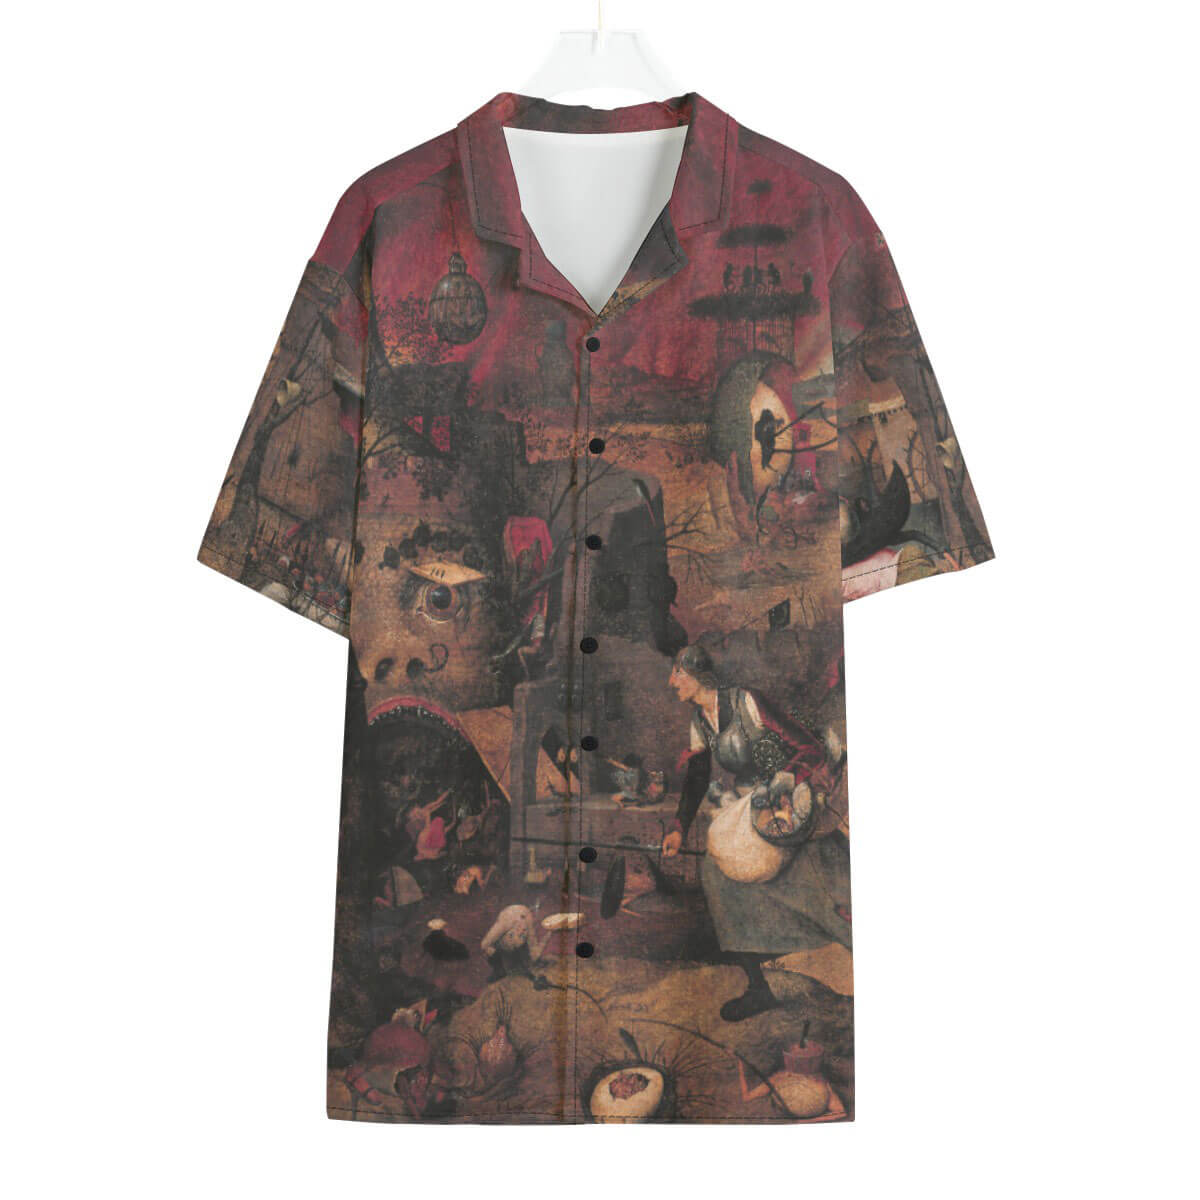 Dull Gret Hawaiian shirt featuring Pieter Bruegel's Renaissance masterpiece